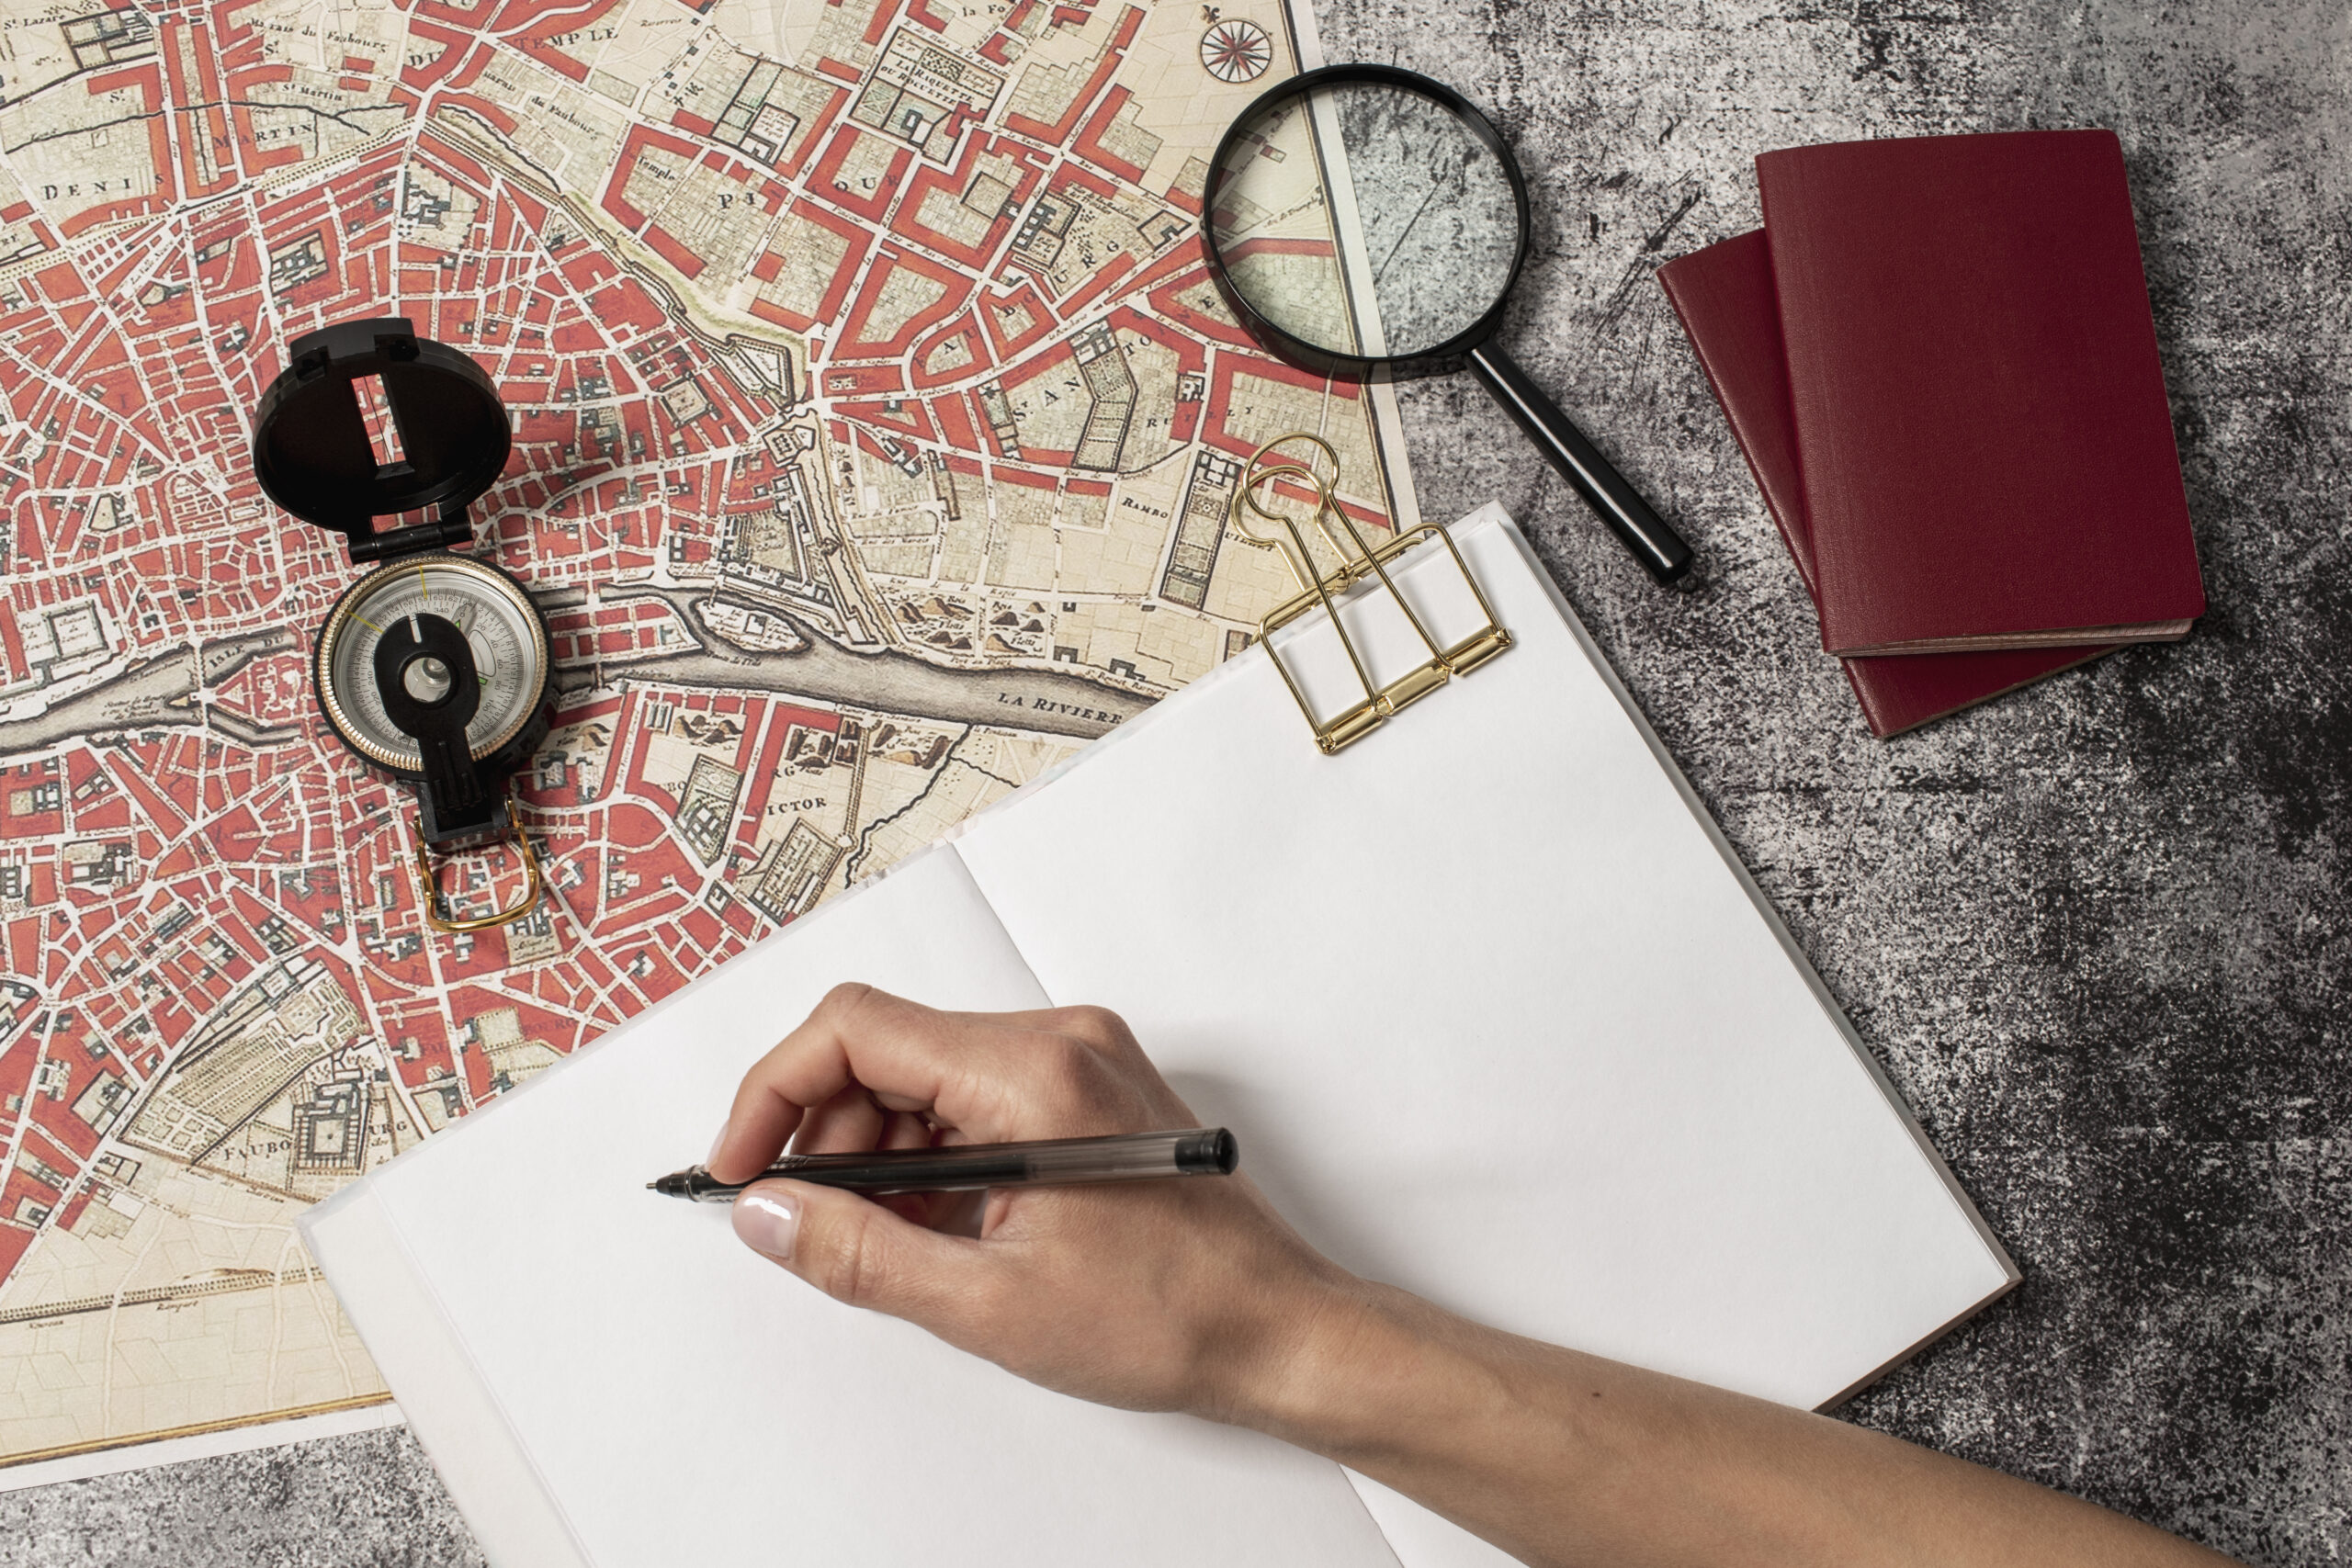 Na imagem, aparece uma mão com uma caneta escrevendo em um papel ao lado de um mapa e lupa